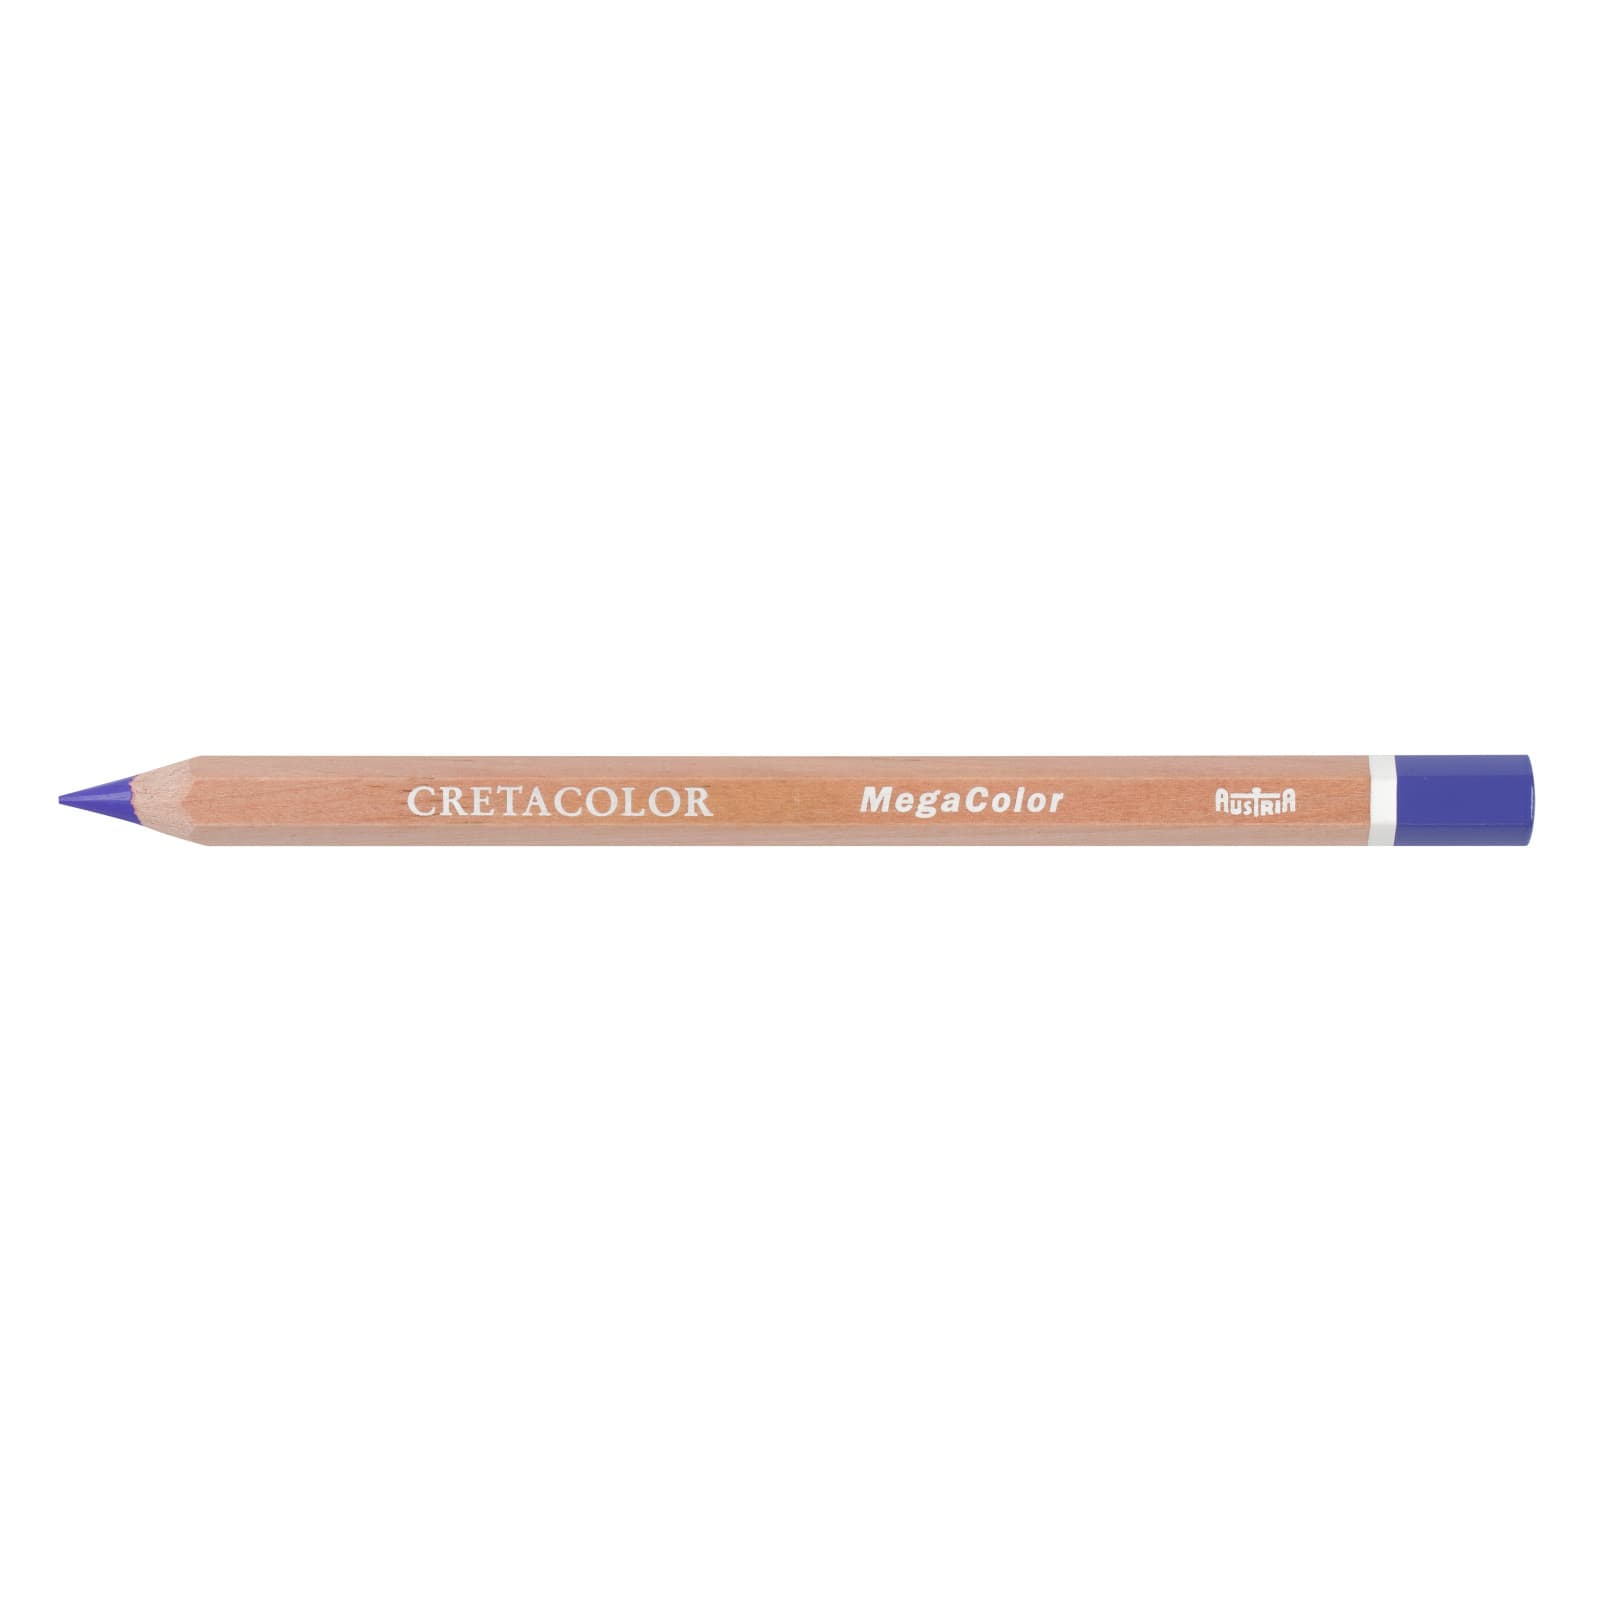 12 Pack: Cretacolor Mega Colored Pencil